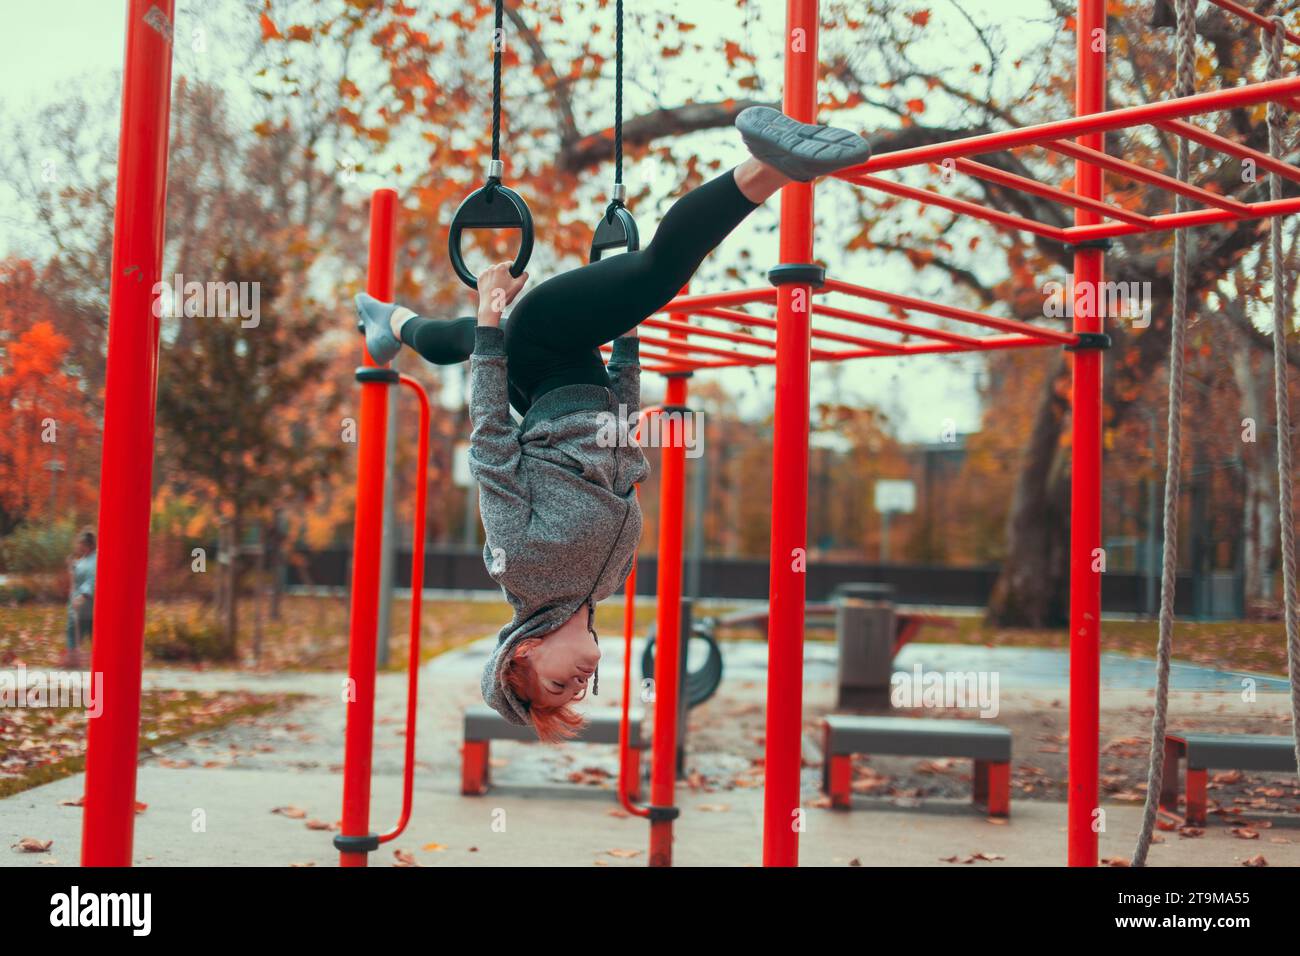 Junge Turnerin in der Stadt Kaukasierin auf dem Spielplatz, die kopfüber an Ringen hängt und im Herbst im Park Spaltungen macht Stockfoto